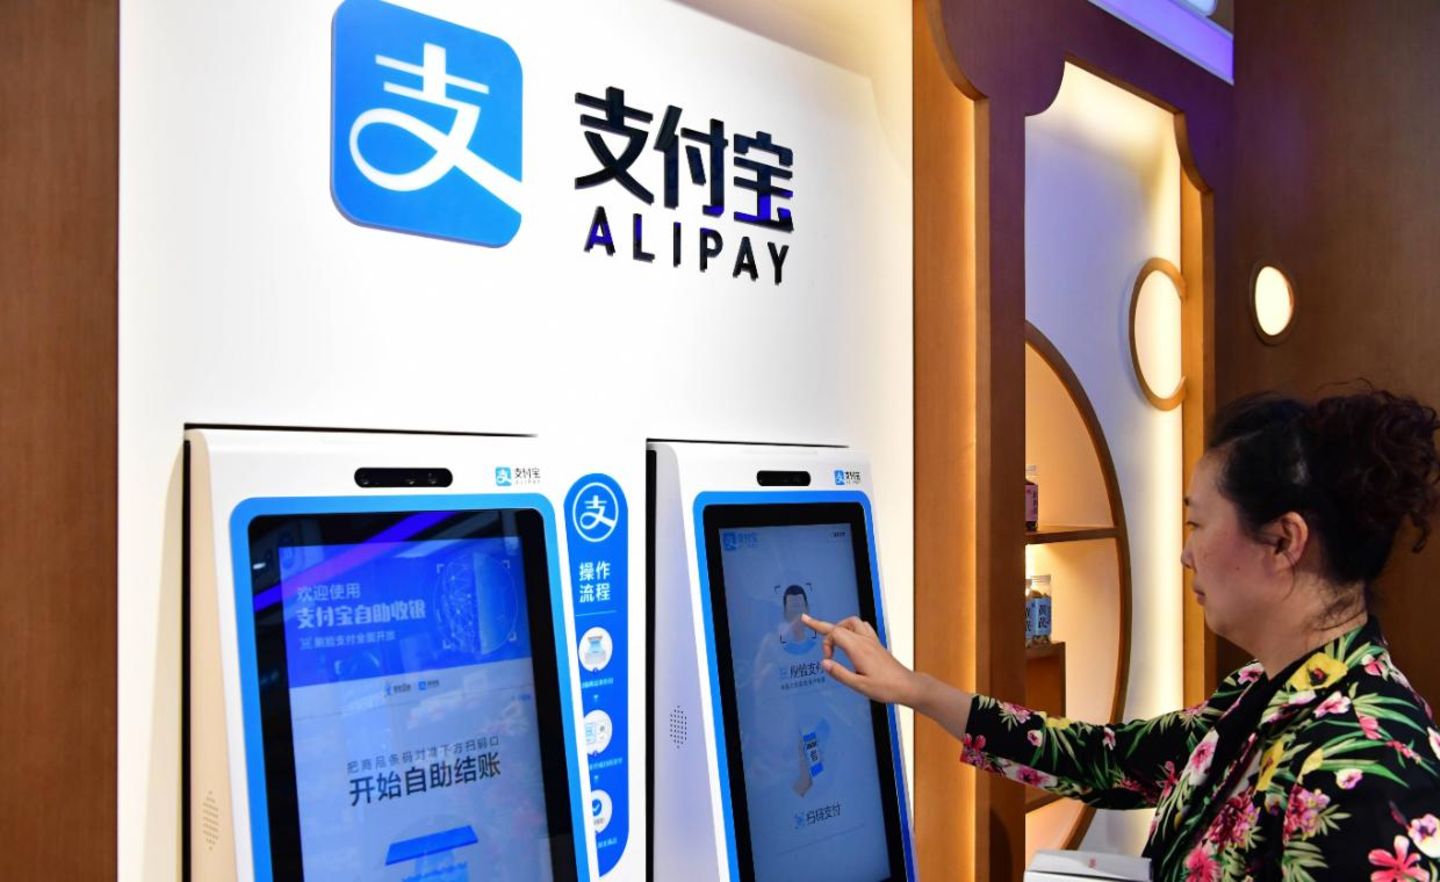 Alipay ist der Bezahldienst von Ant Financial. Er dominiert den chinesischen Markt